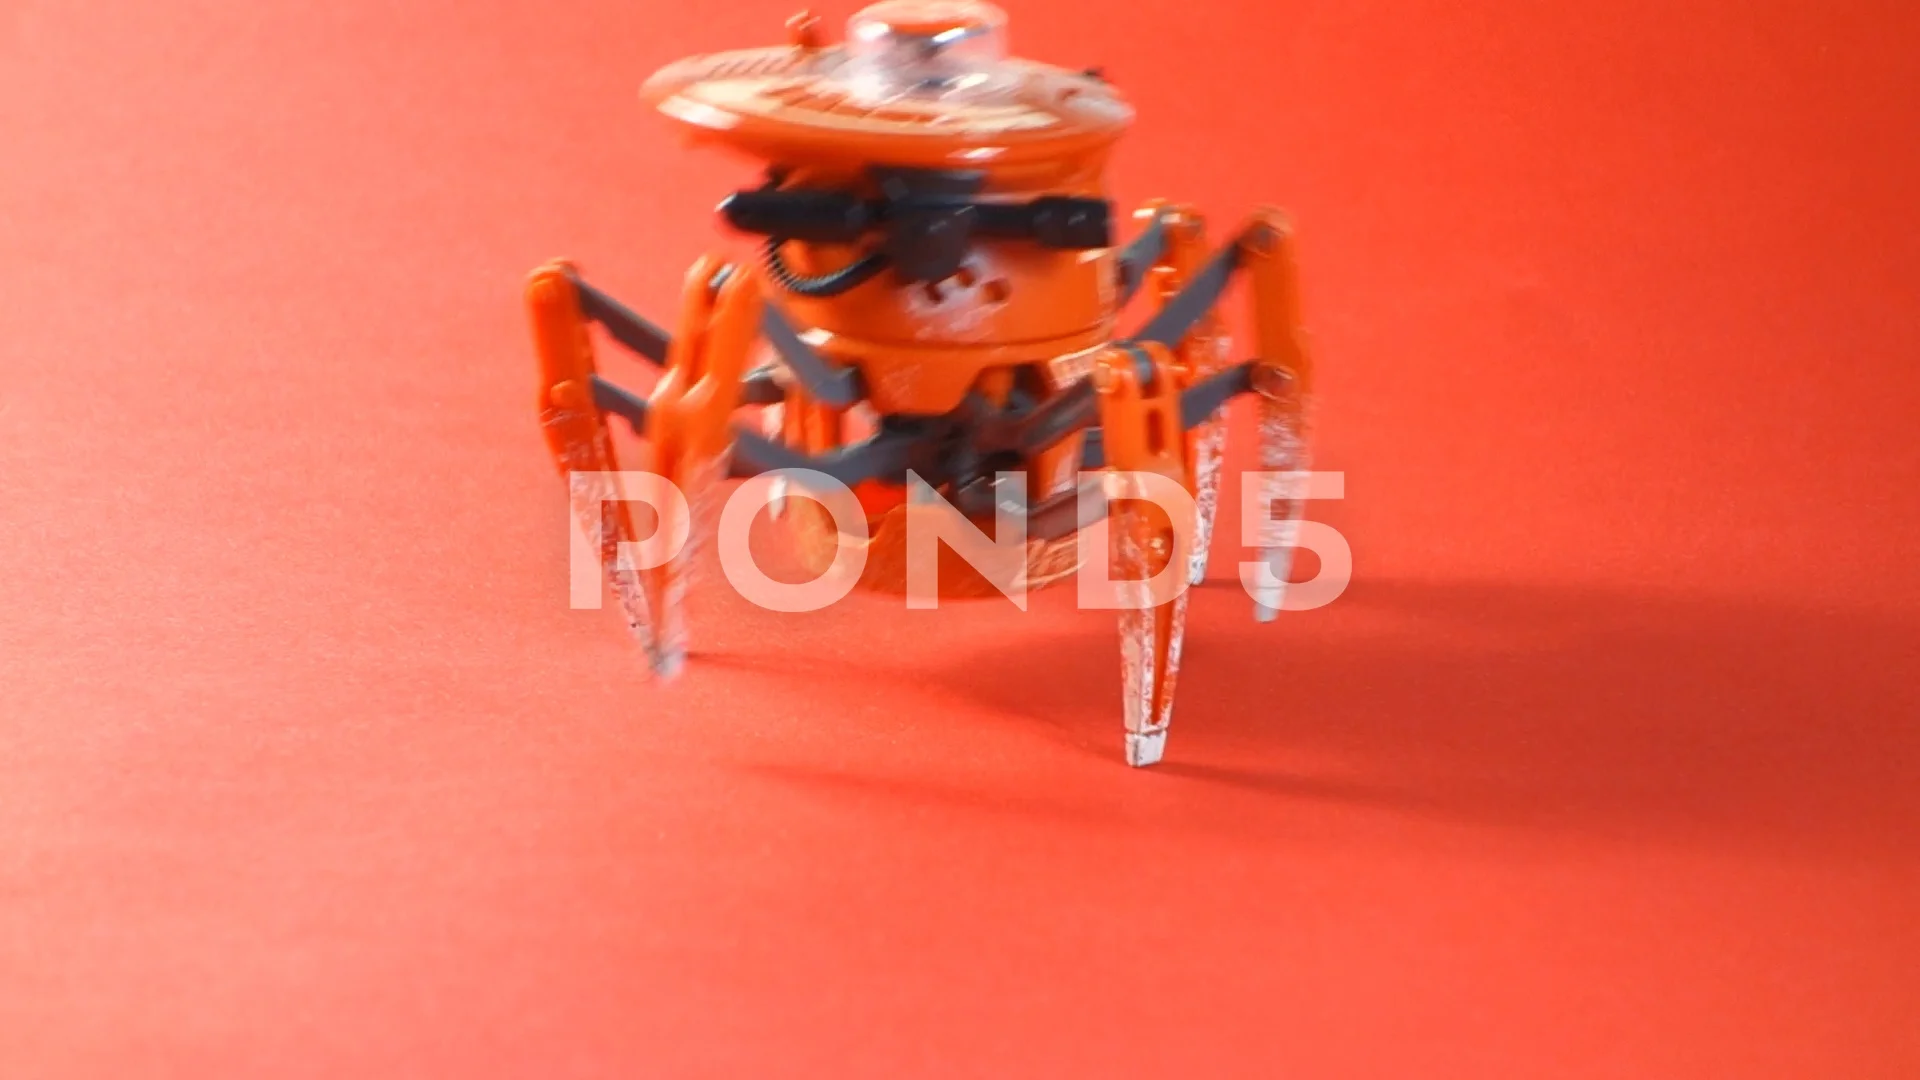 Spider Robot Hd Wallpaper